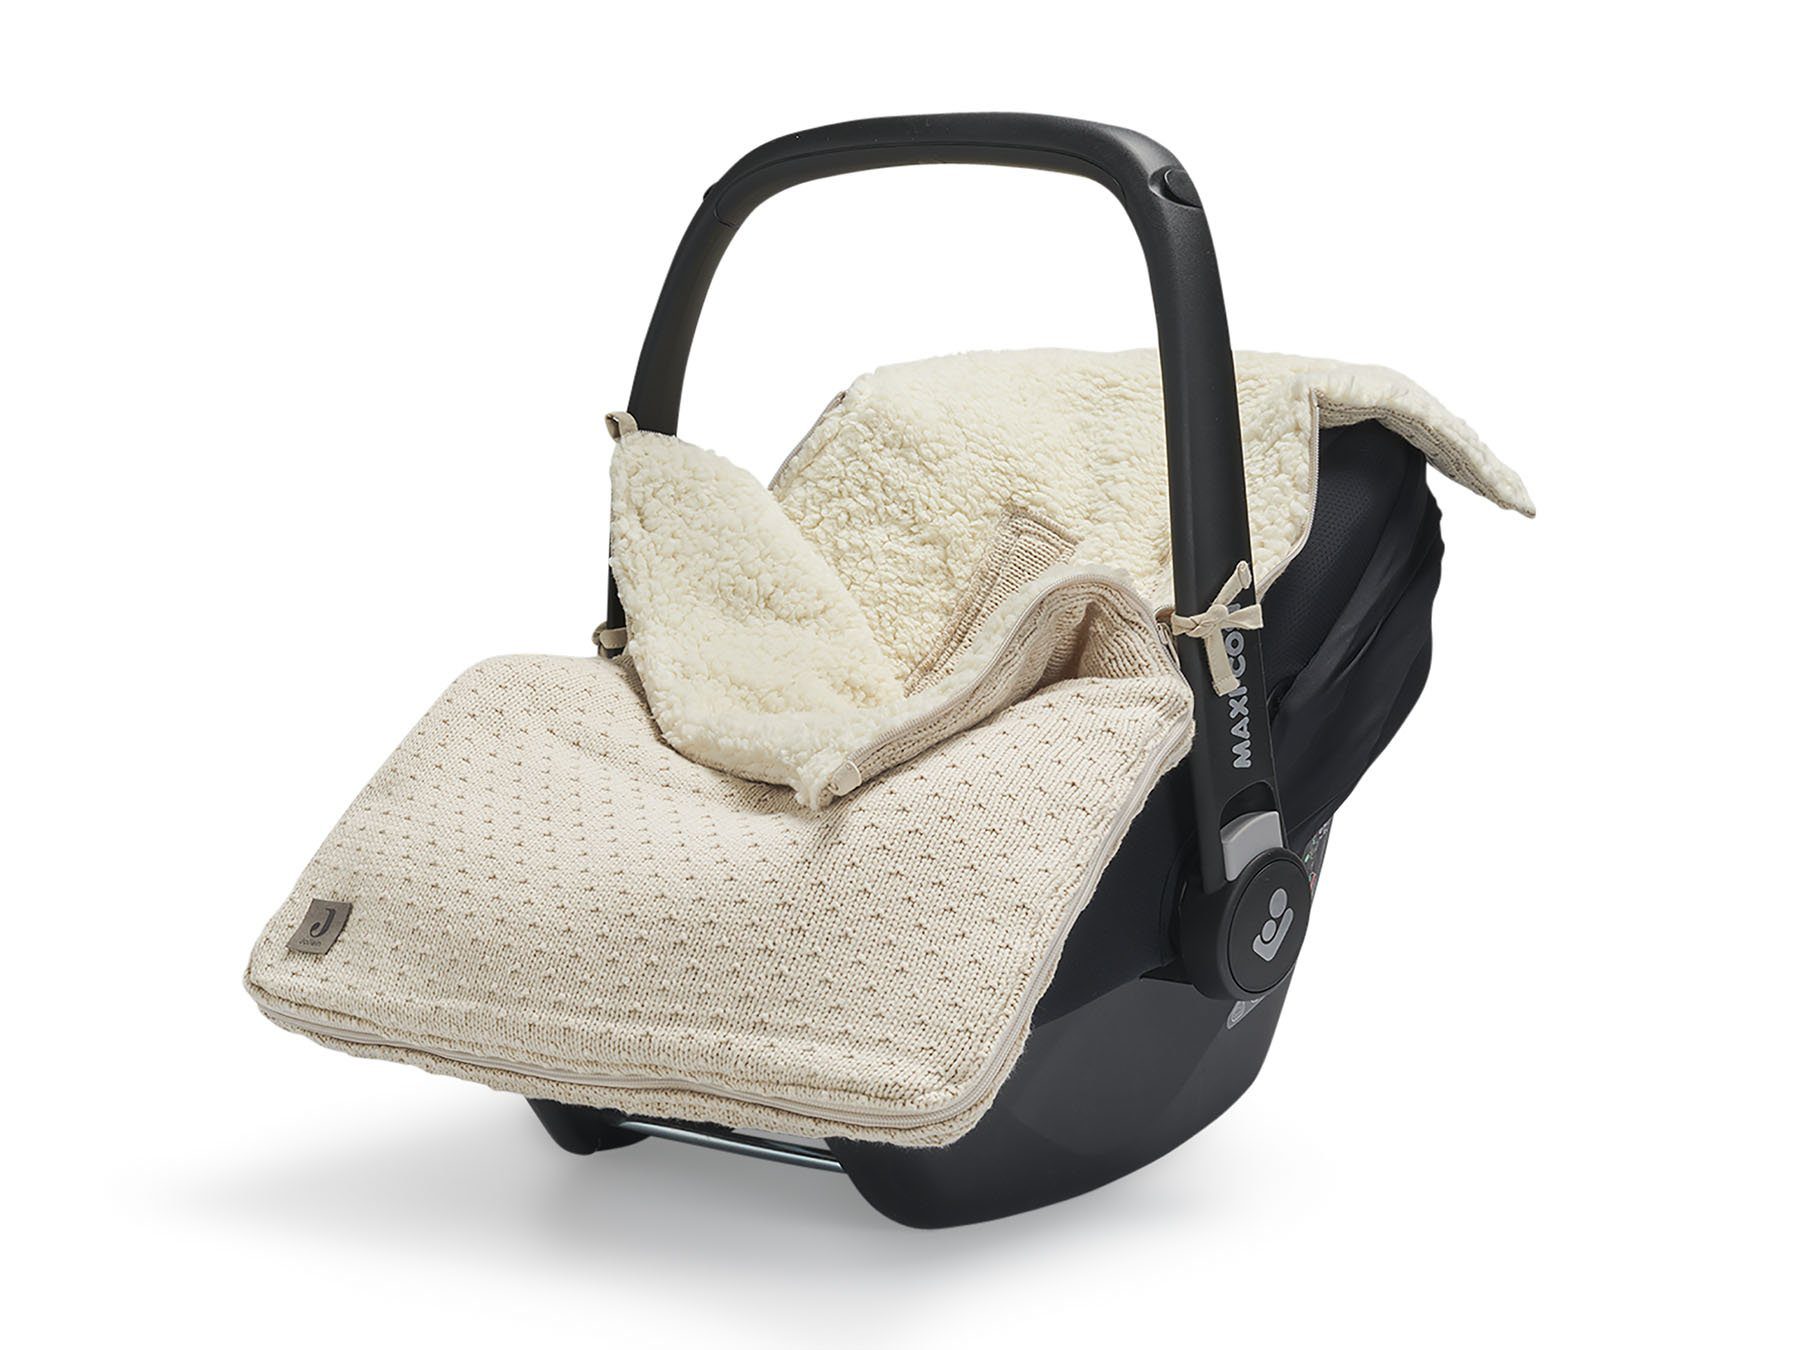 Voetenzak voor Autostoel & Kinderwagen - Bliss Knit - Nougat